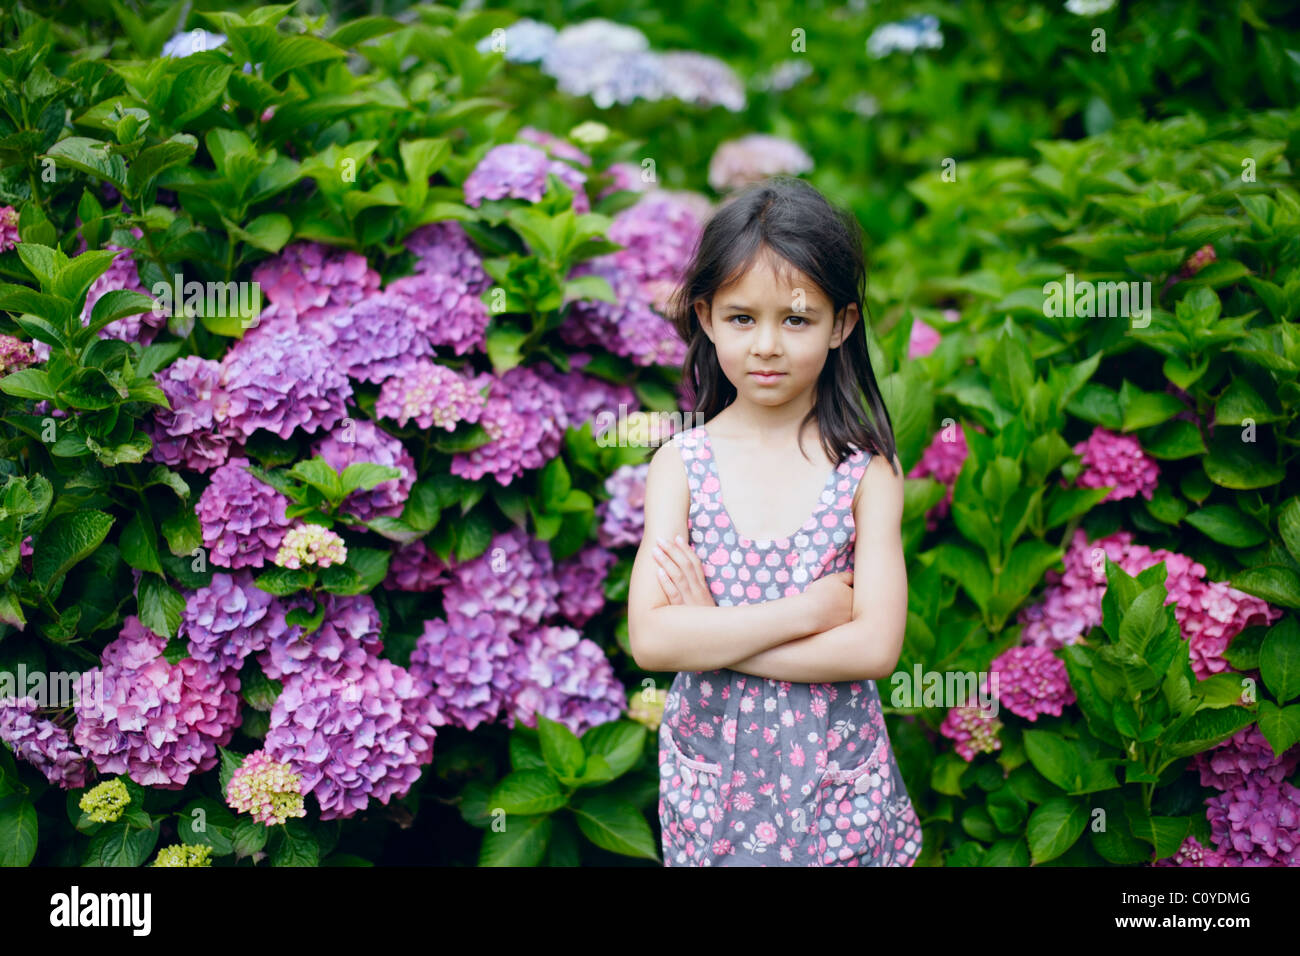 Fille dans un jardin. Robe pourpre et fleurs violettes. Banque D'Images